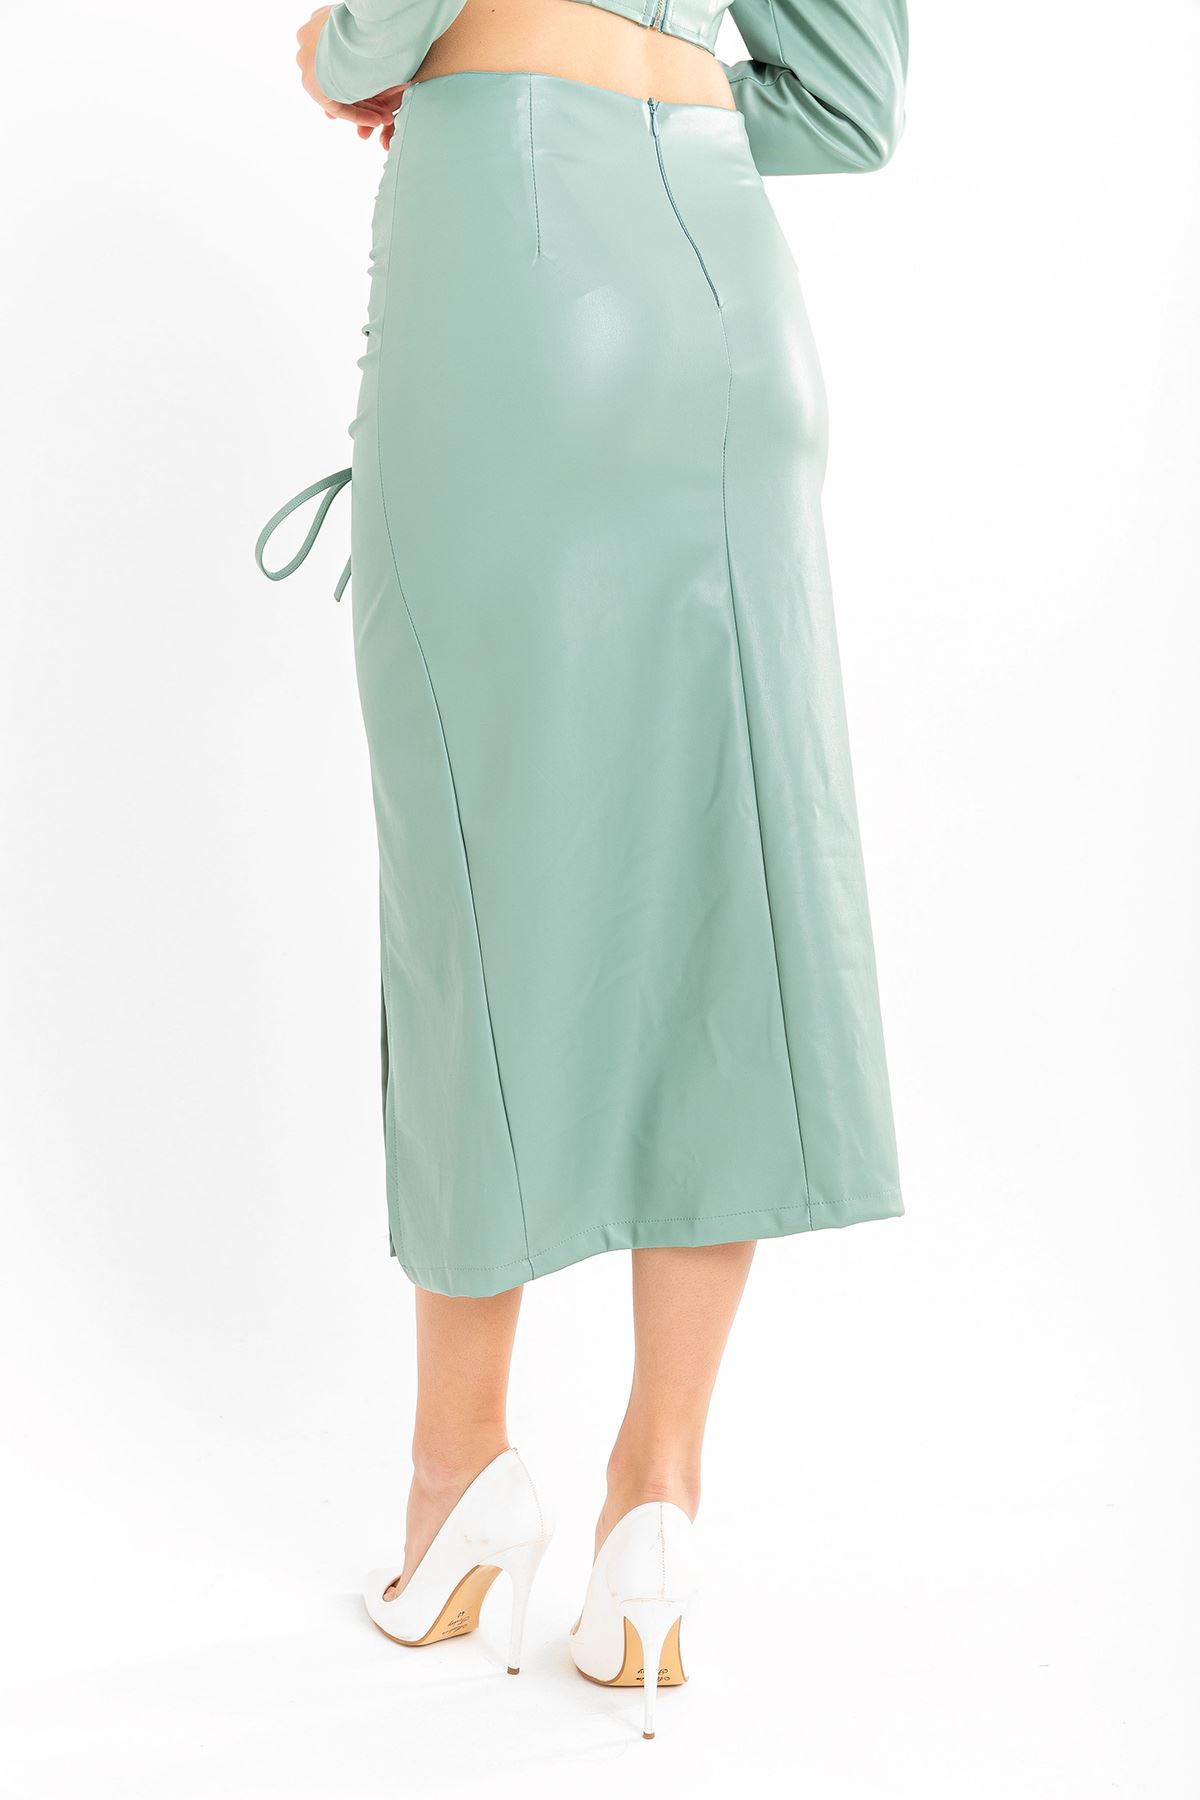 Deri Kumaş Diz Altı Boy Yırtmaçlı Büzgü Detaylı Kadın Etek-Mint